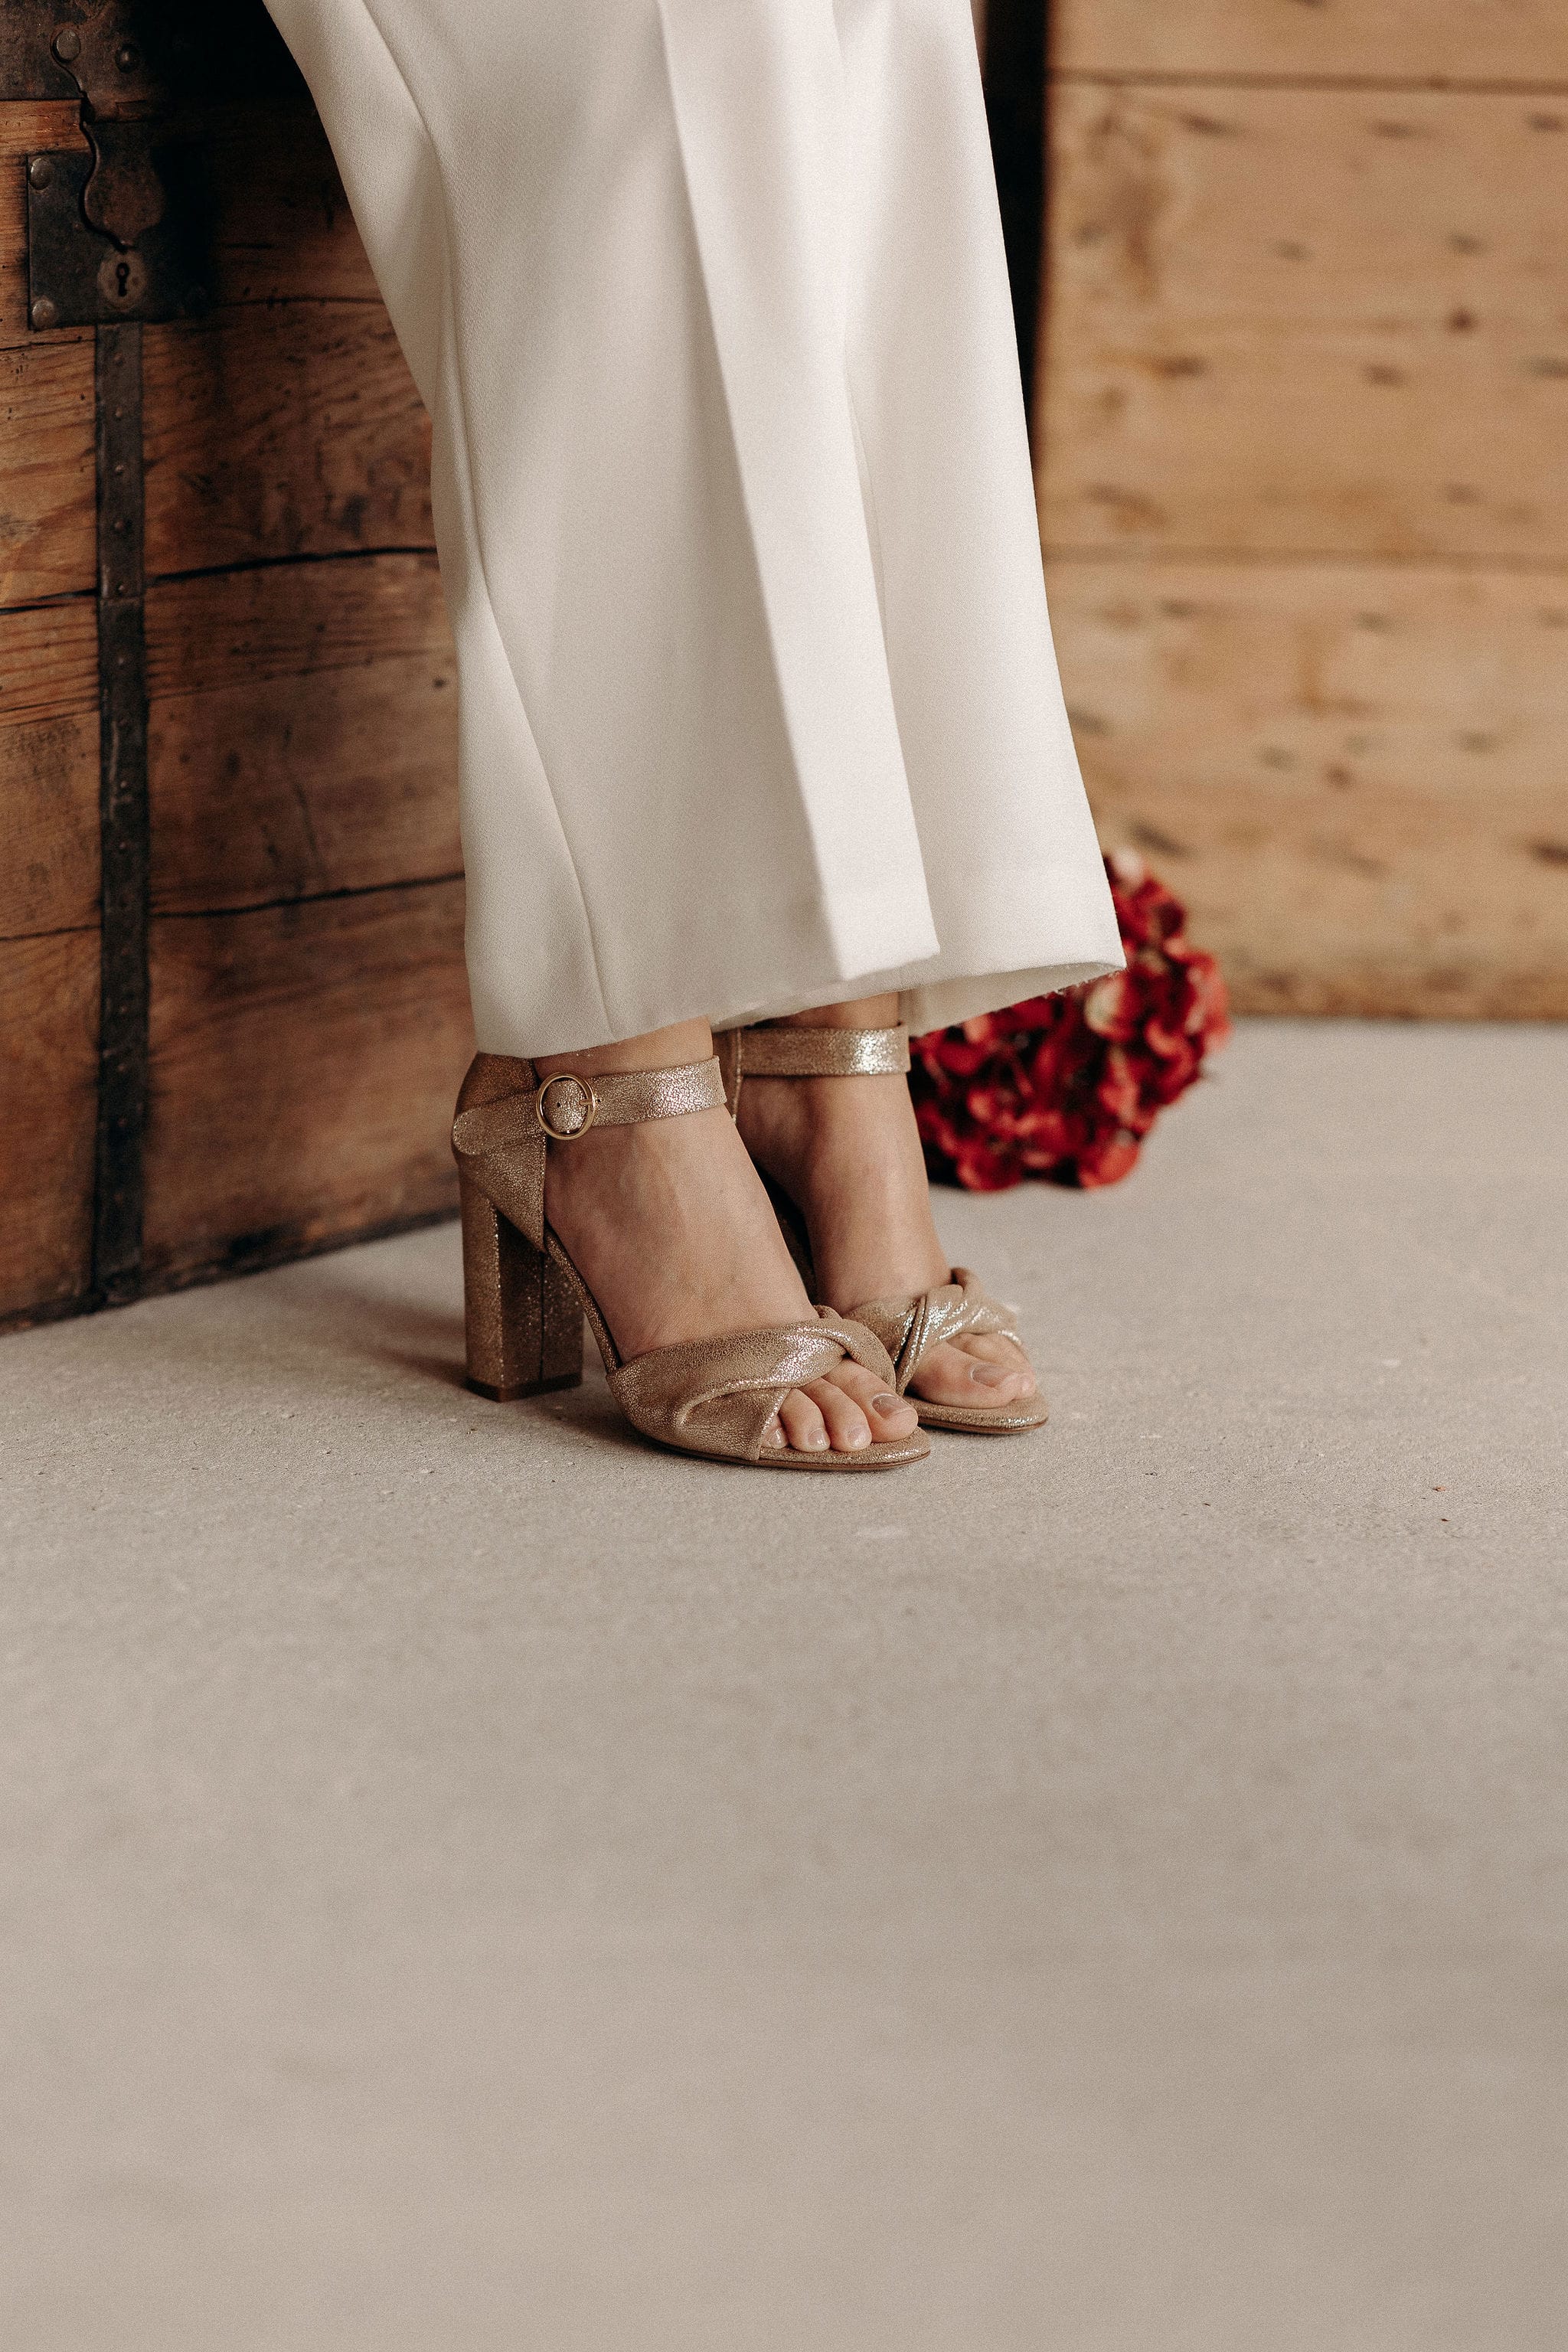 Pied de biche - Chaussures de mariage - Blog mariage : La mariée aux pieds nus